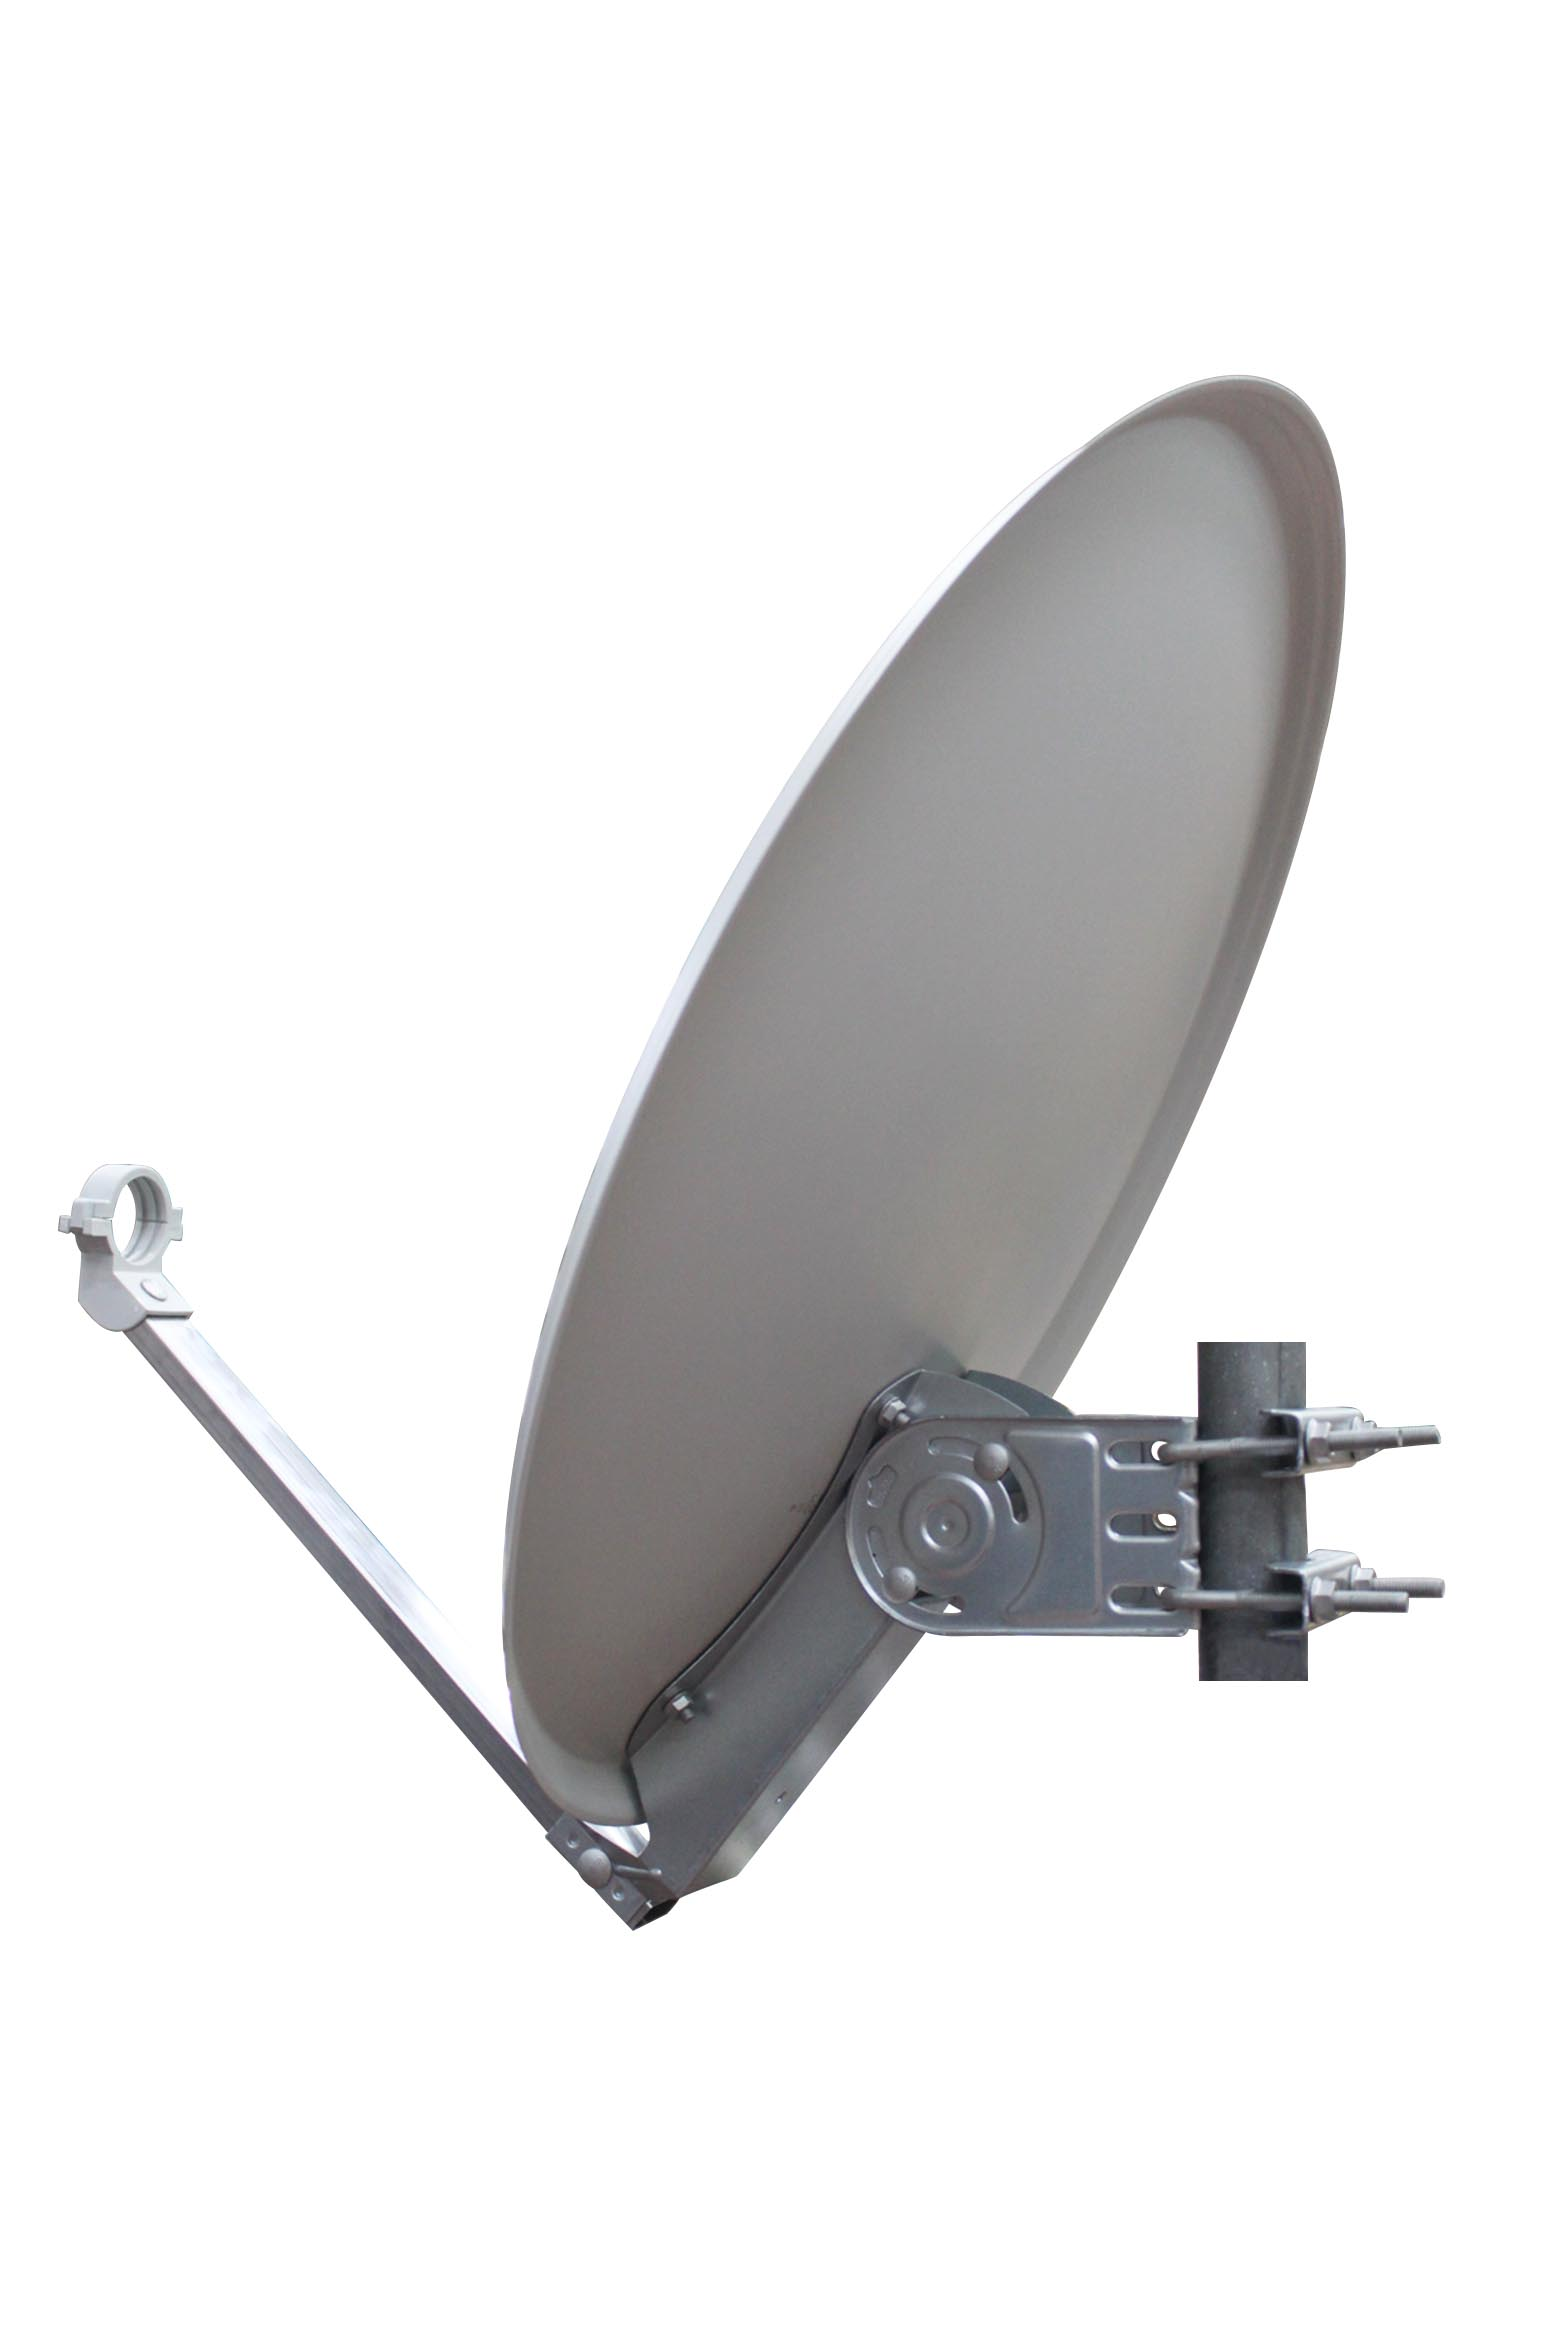 aus RED cm 60 Satellitenschüssel OPTICUM 3D Satellitenantenne fähig-Witterungsbeständige HD & lichtgrau-4K Sat-Antenne Stahl QA-60